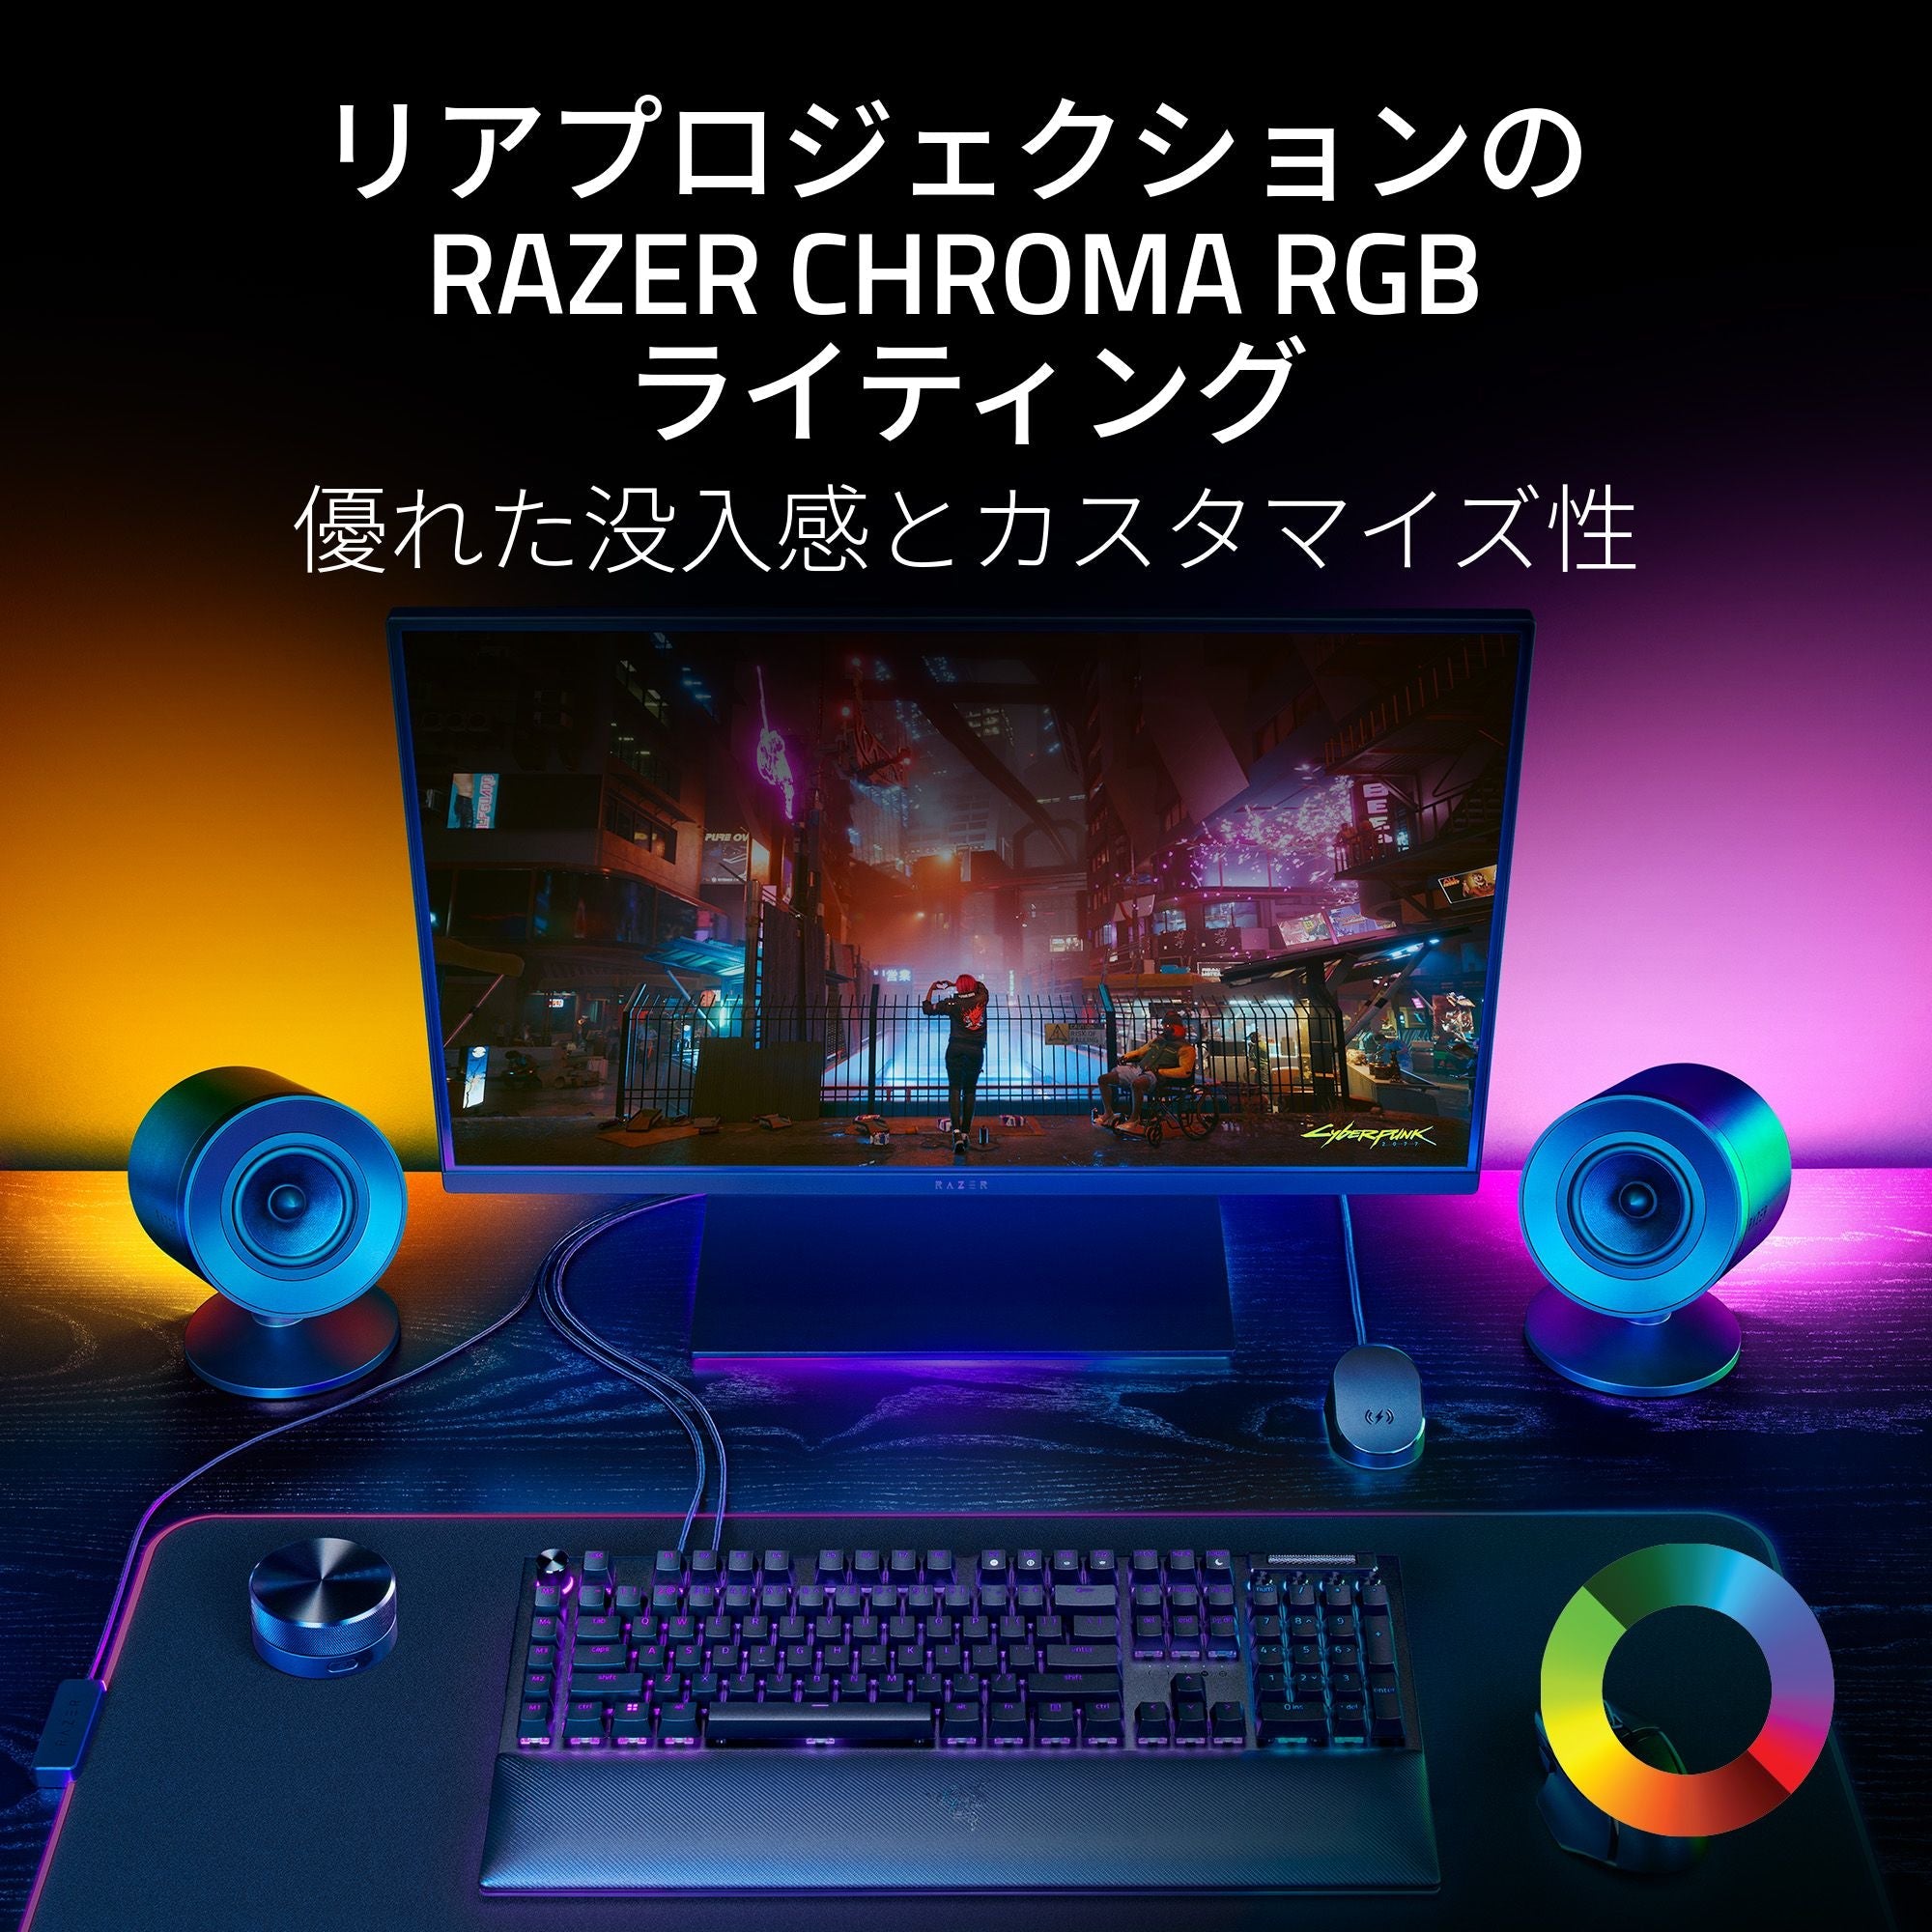 Razer レイザー Nommo V2 Pro ノンモ ブイツー プロ – GRAPHT OFFICIAL